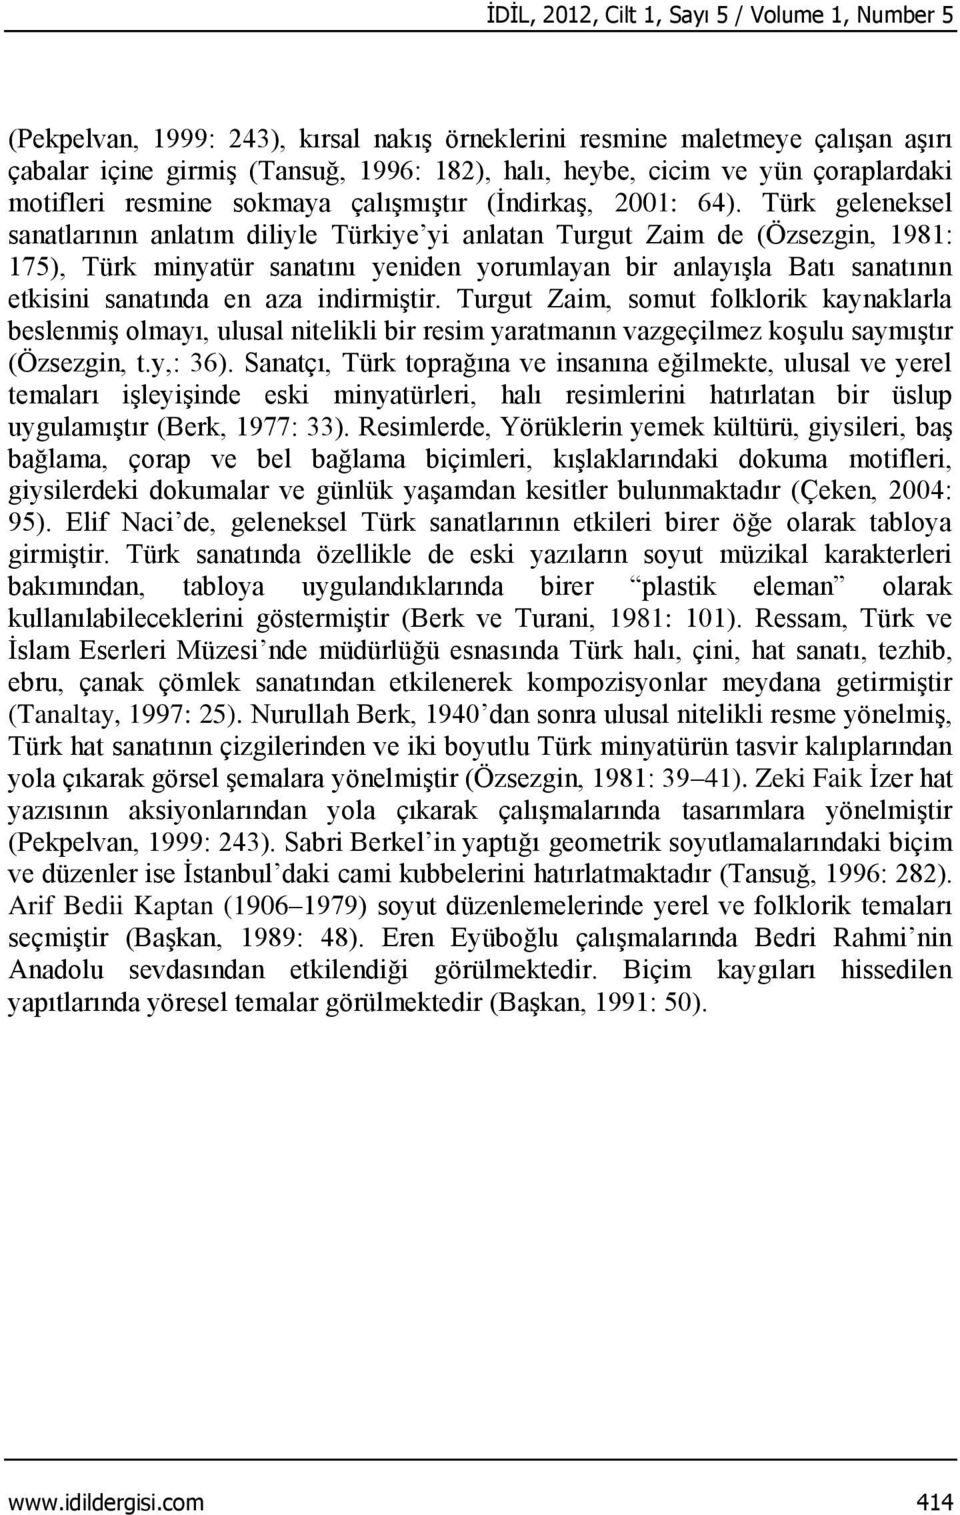 Türk geleneksel sanatlarının anlatım diliyle Türkiye yi anlatan Turgut Zaim de (Özsezgin, 1981: 175), Türk minyatür sanatını yeniden yorumlayan bir anlayışla Batı sanatının etkisini sanatında en aza